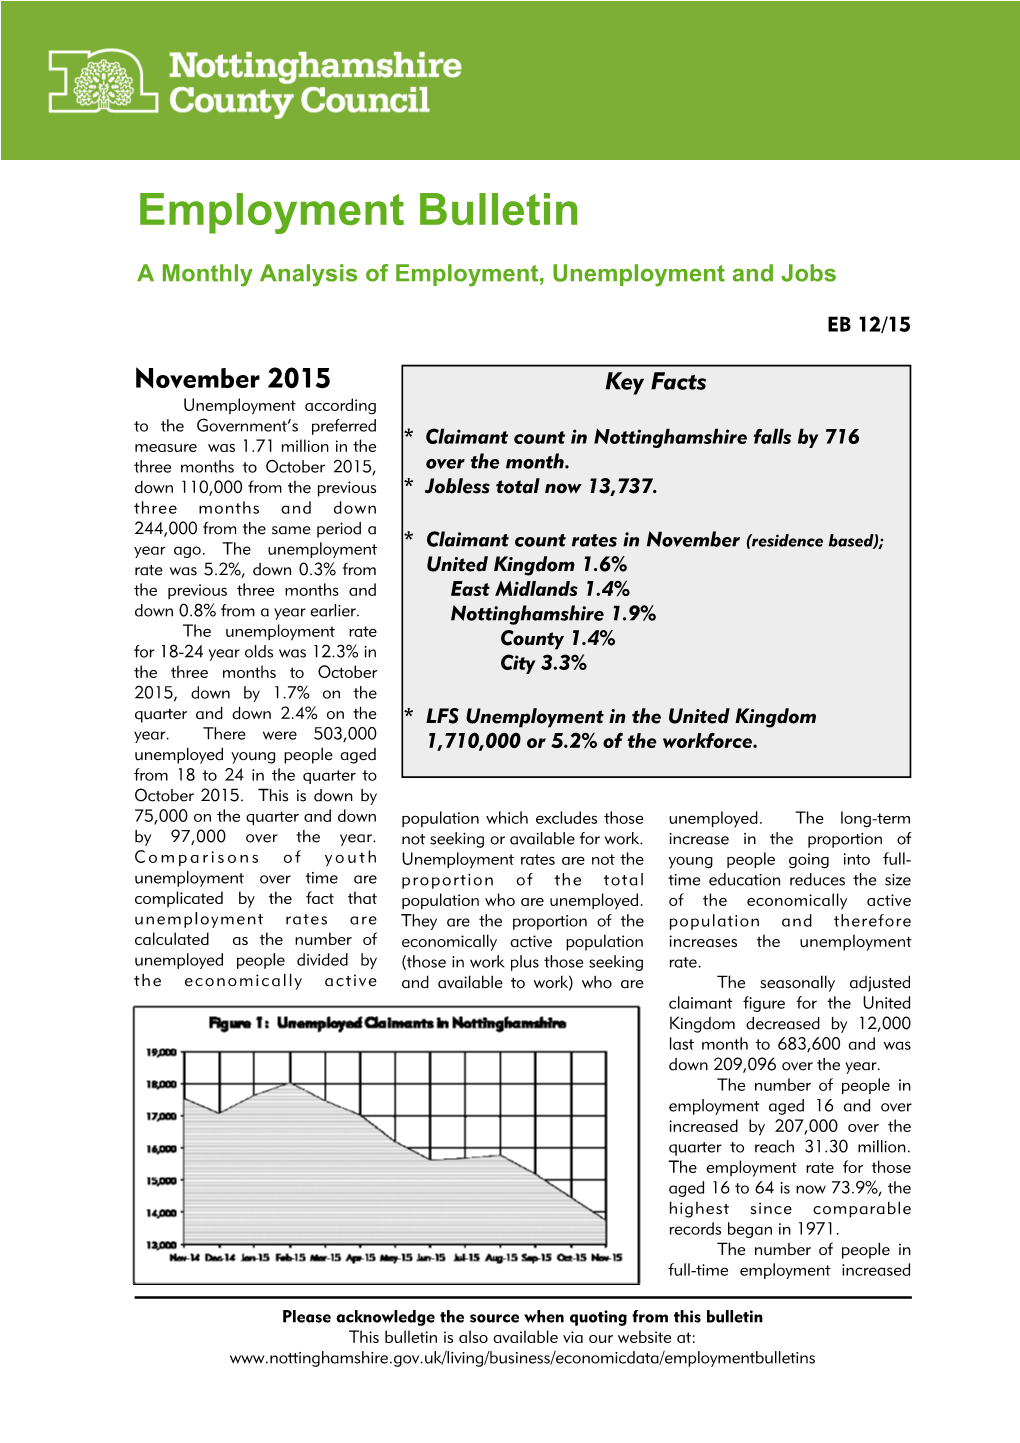 Employment Bulletin EB 12/15